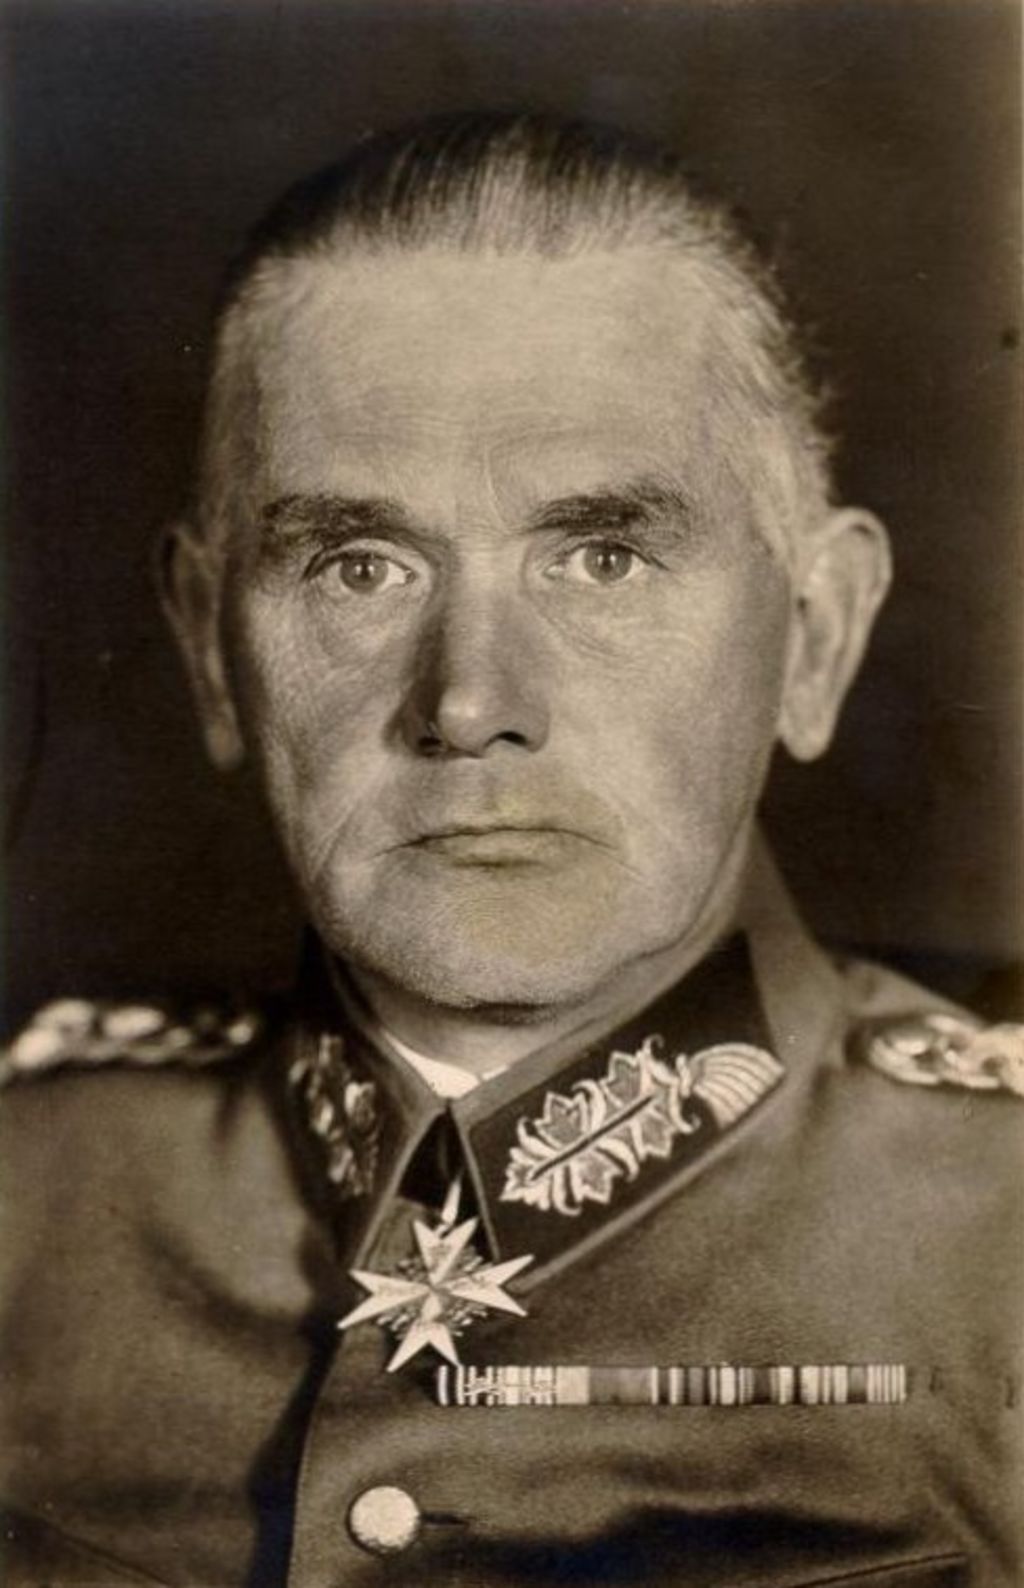 Postkarte: Blomberg, Werner von, 1935/1938